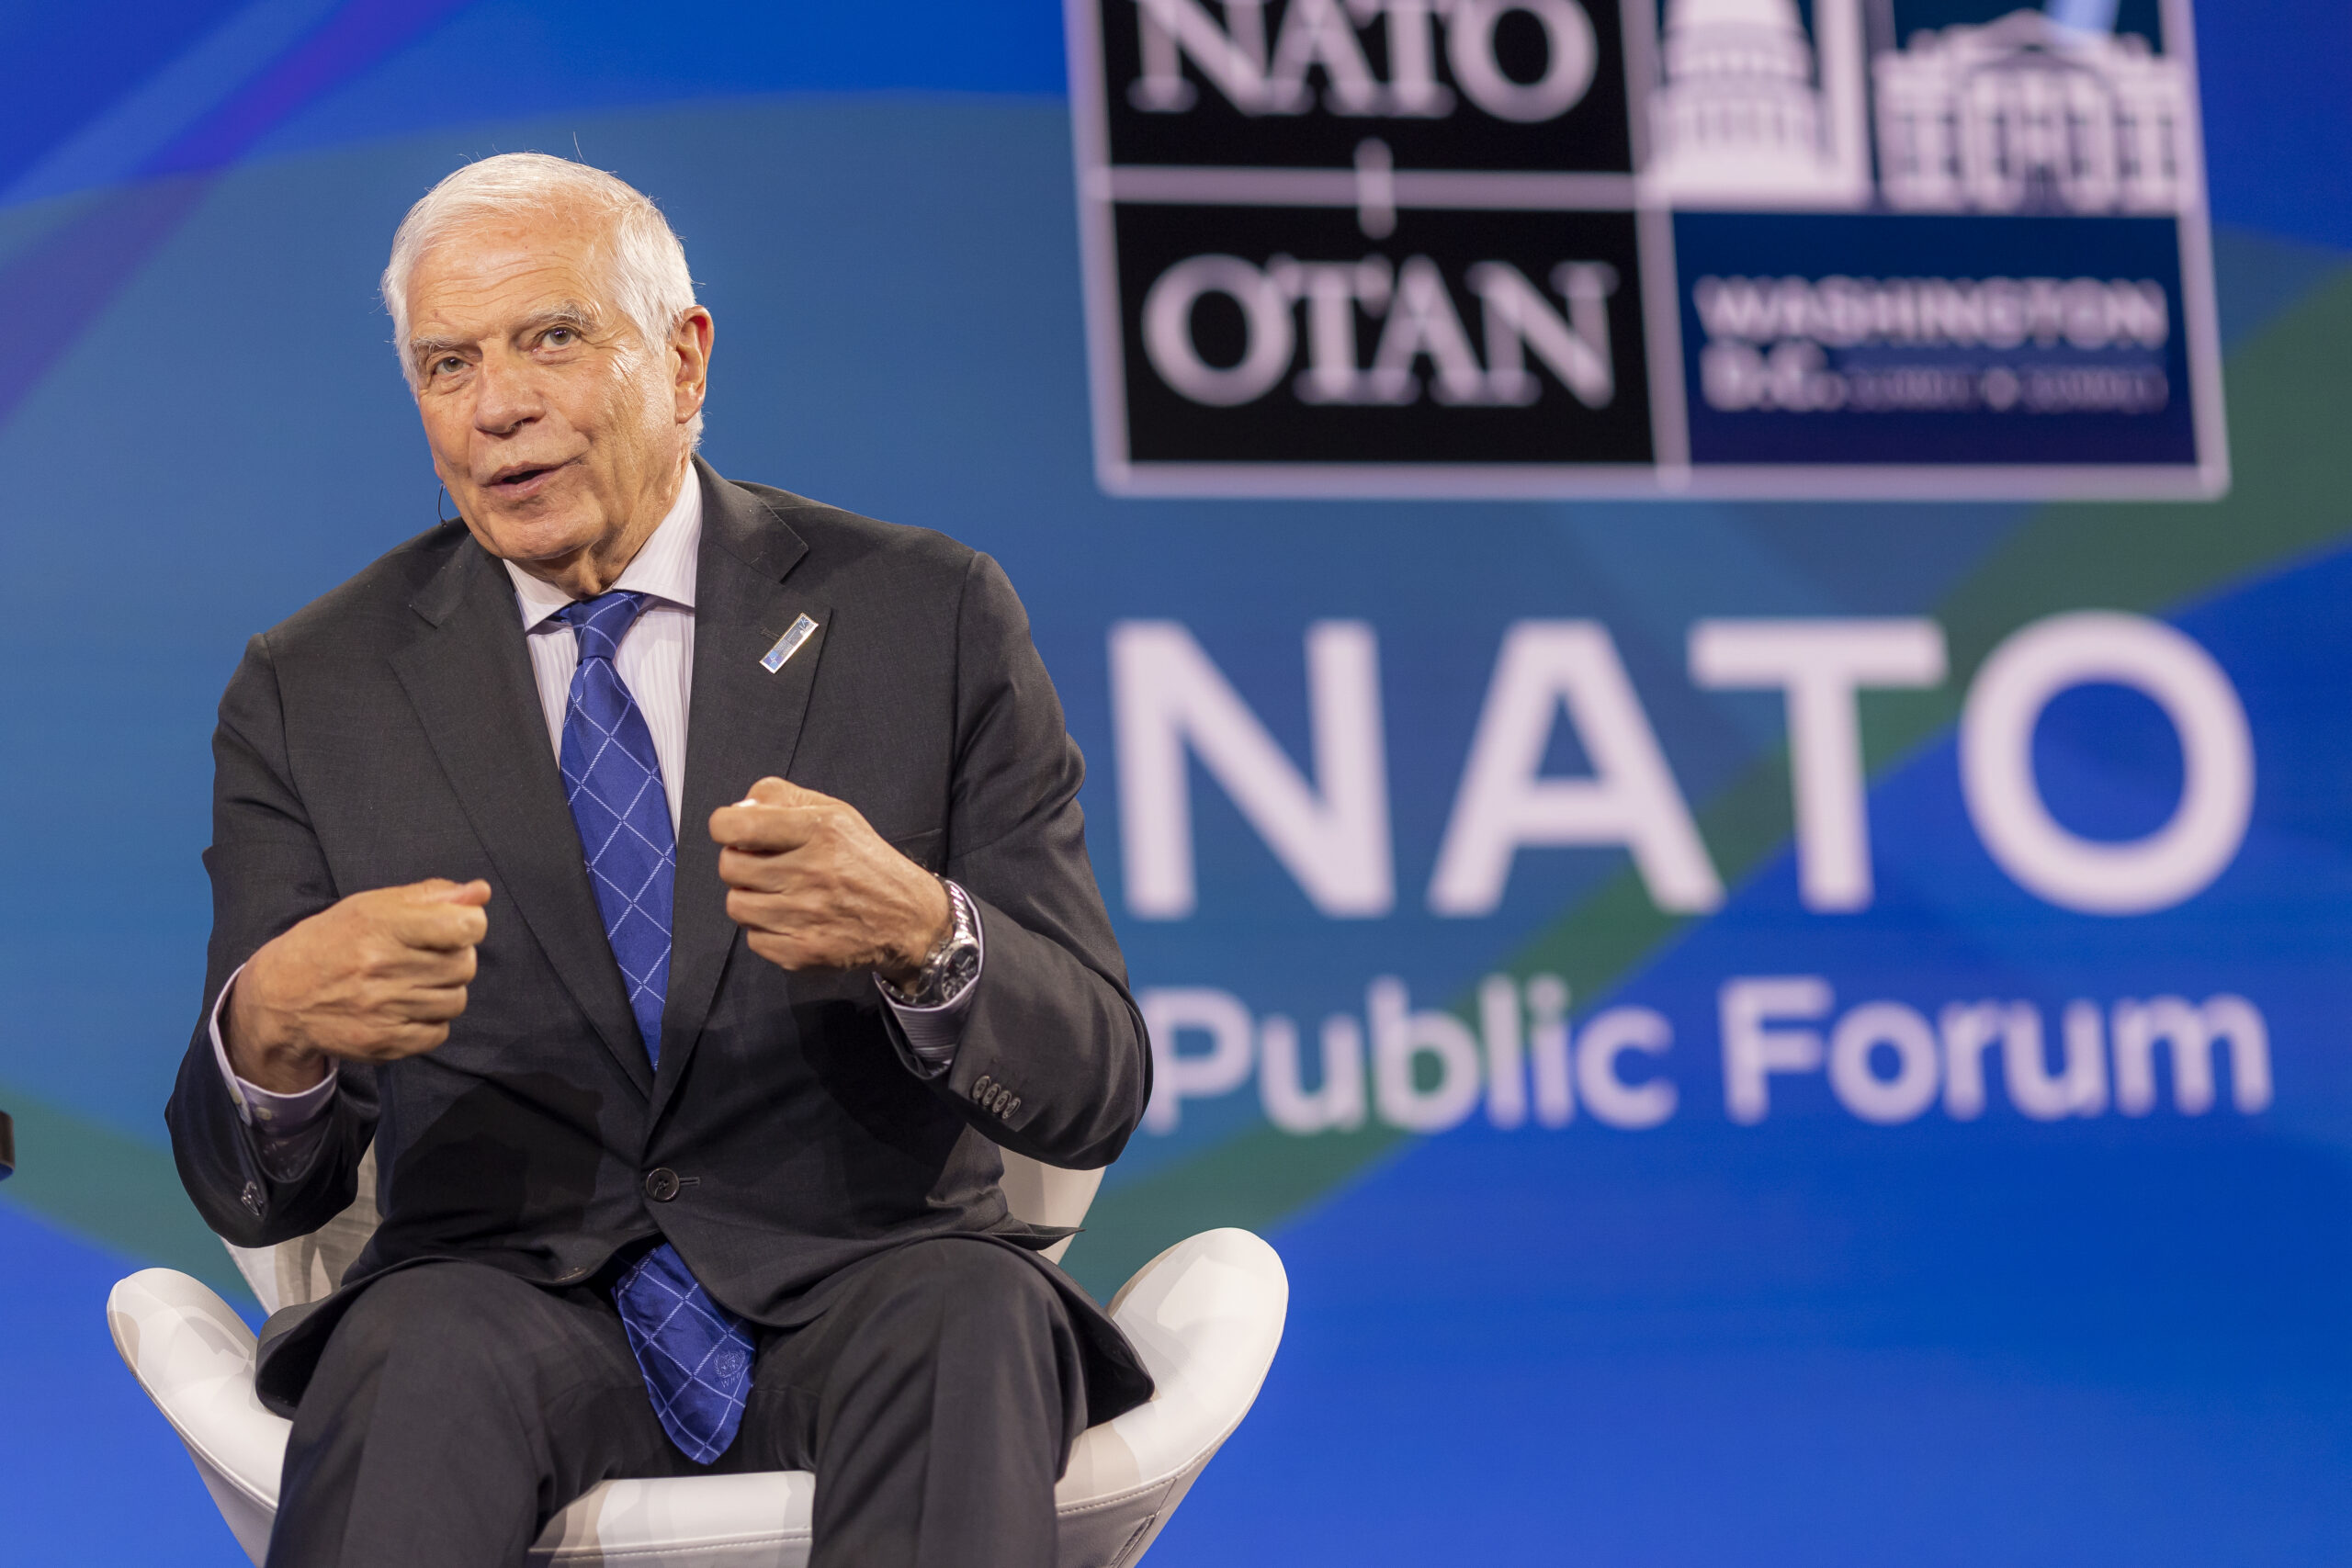 Il Nato Public Forum si chiude con Borrel, Yermak, Sullivan. Tutte le foto